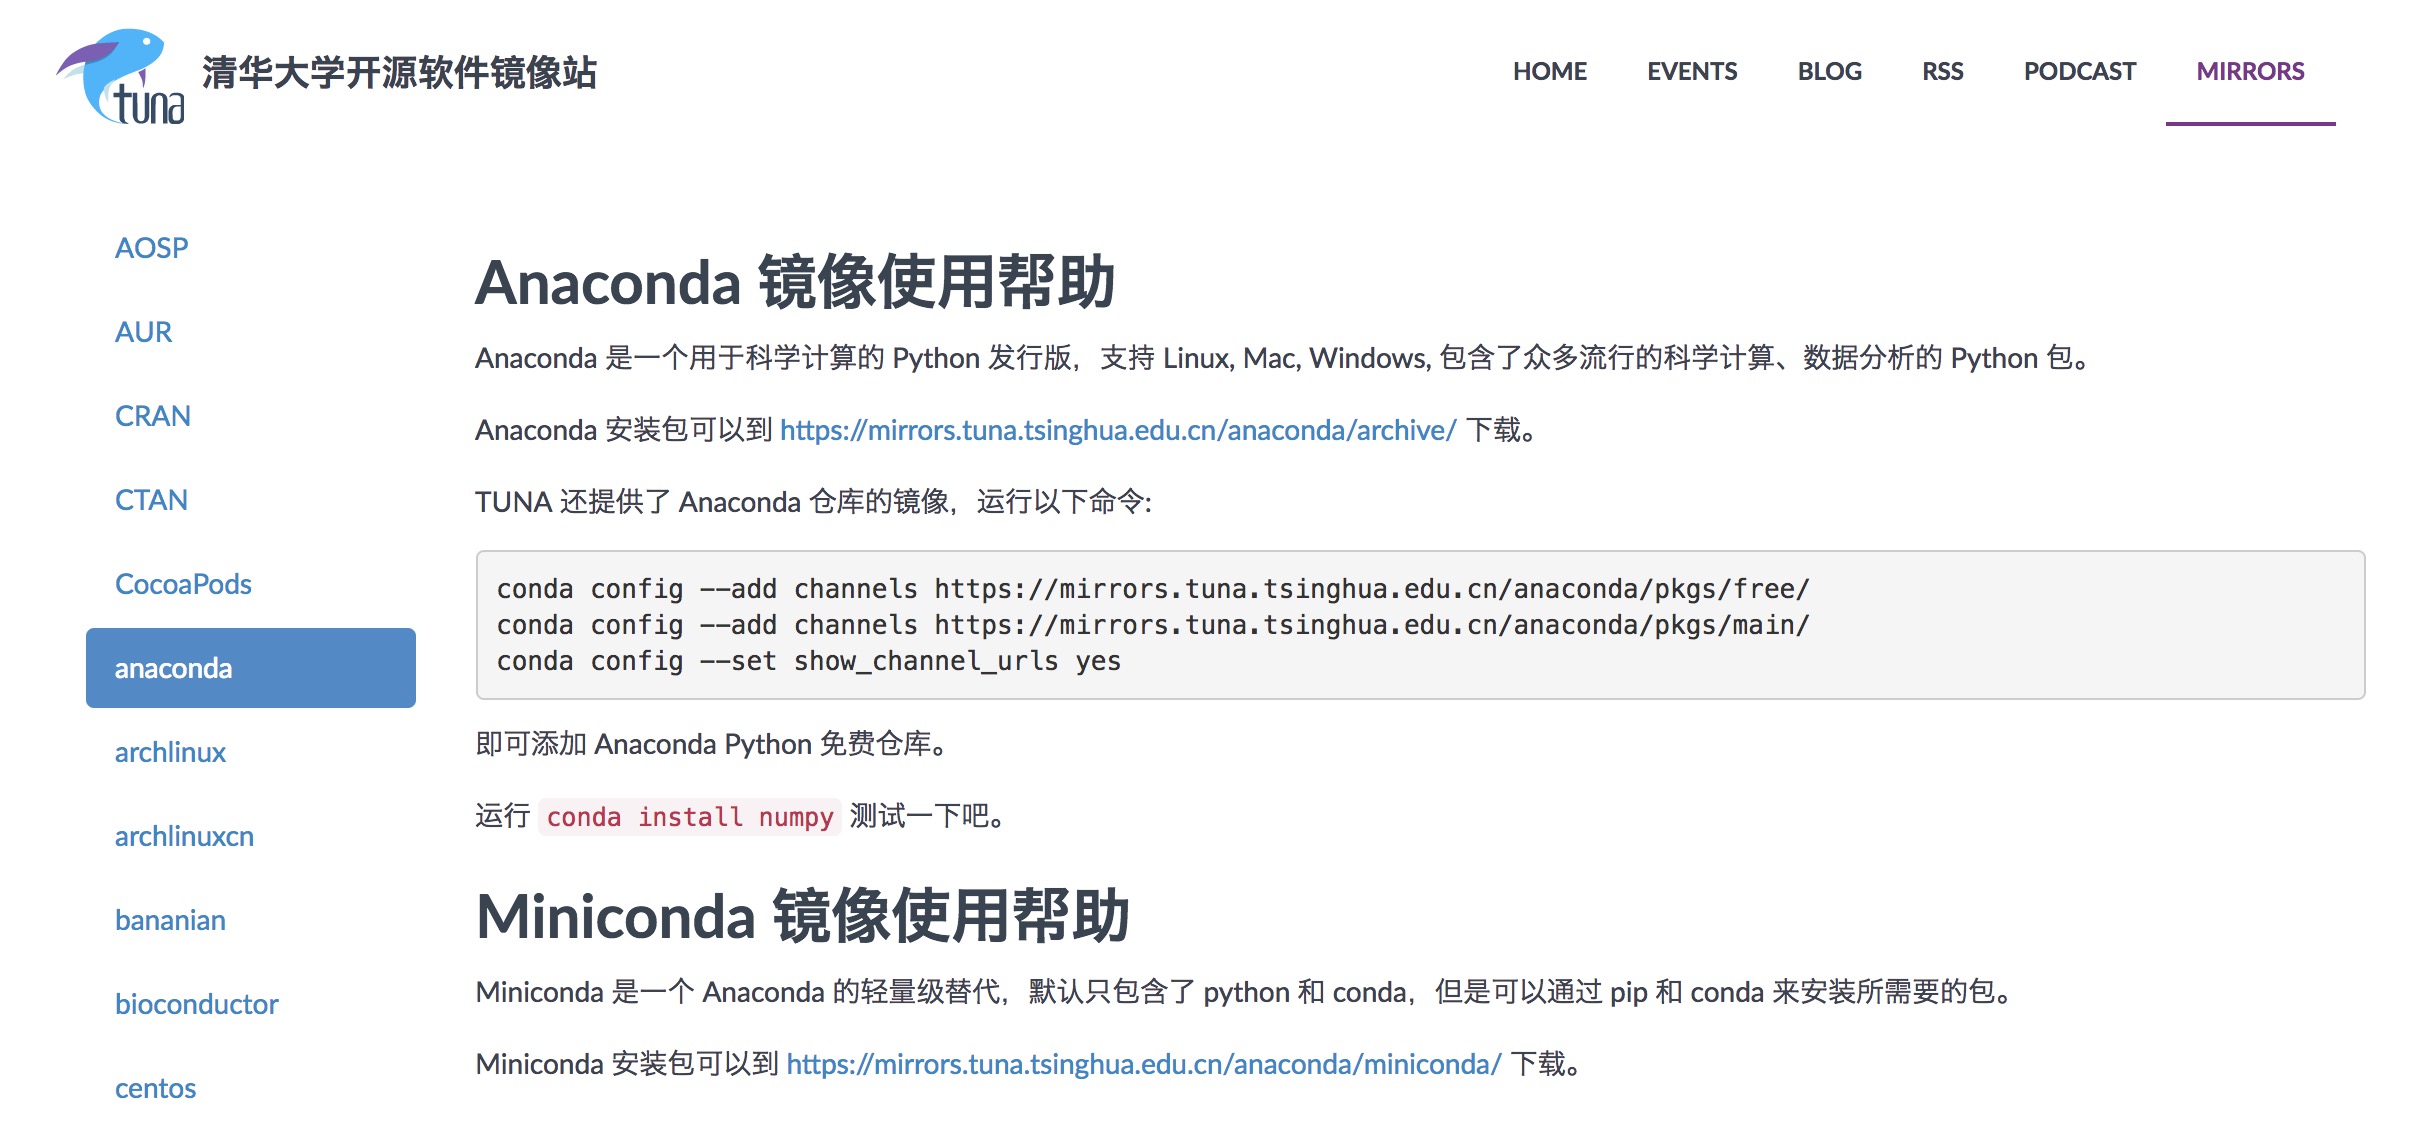 清华大学开源镜像Anaconda页面